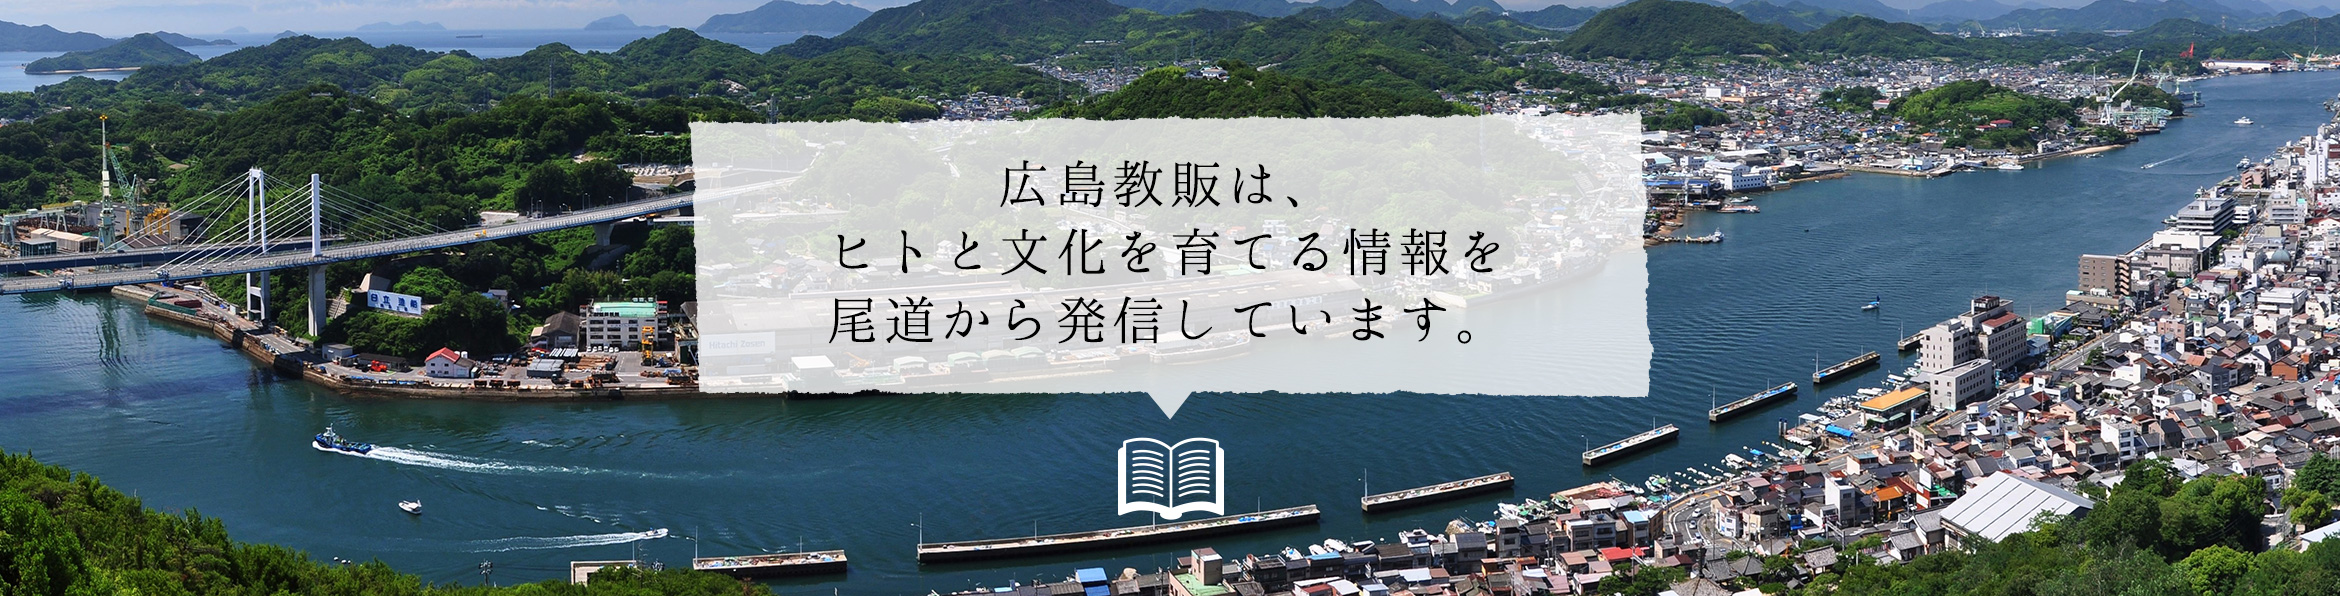 広島教販は、ヒトと文化を育てる情報を尾道から発信しています。